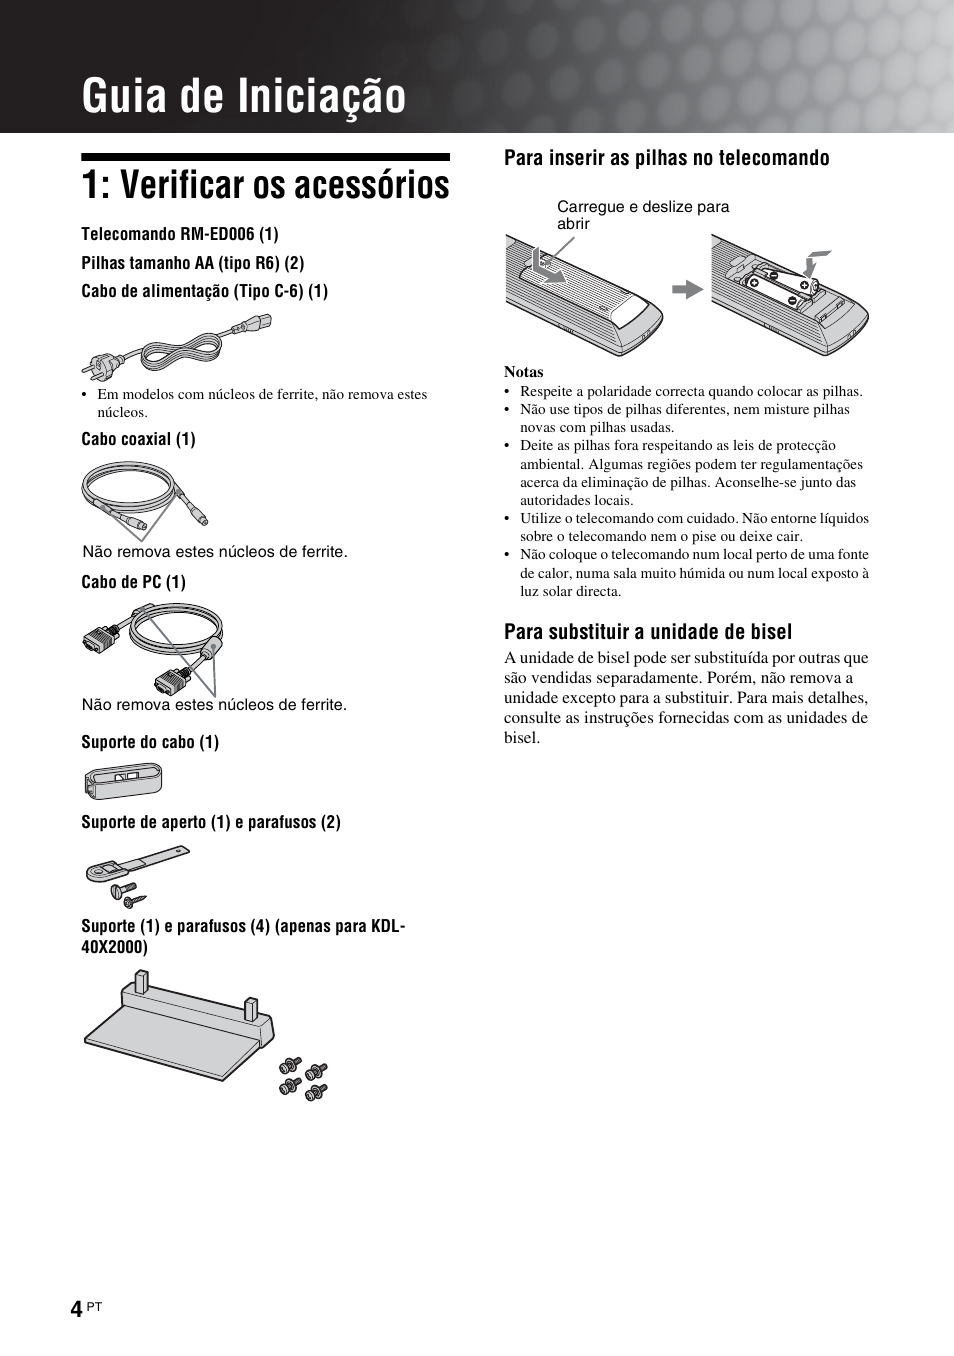 Guia de iniciação, Verificar os acessórios | Sony KDL-40X2000 Manual del usuario | Página 56 / 164